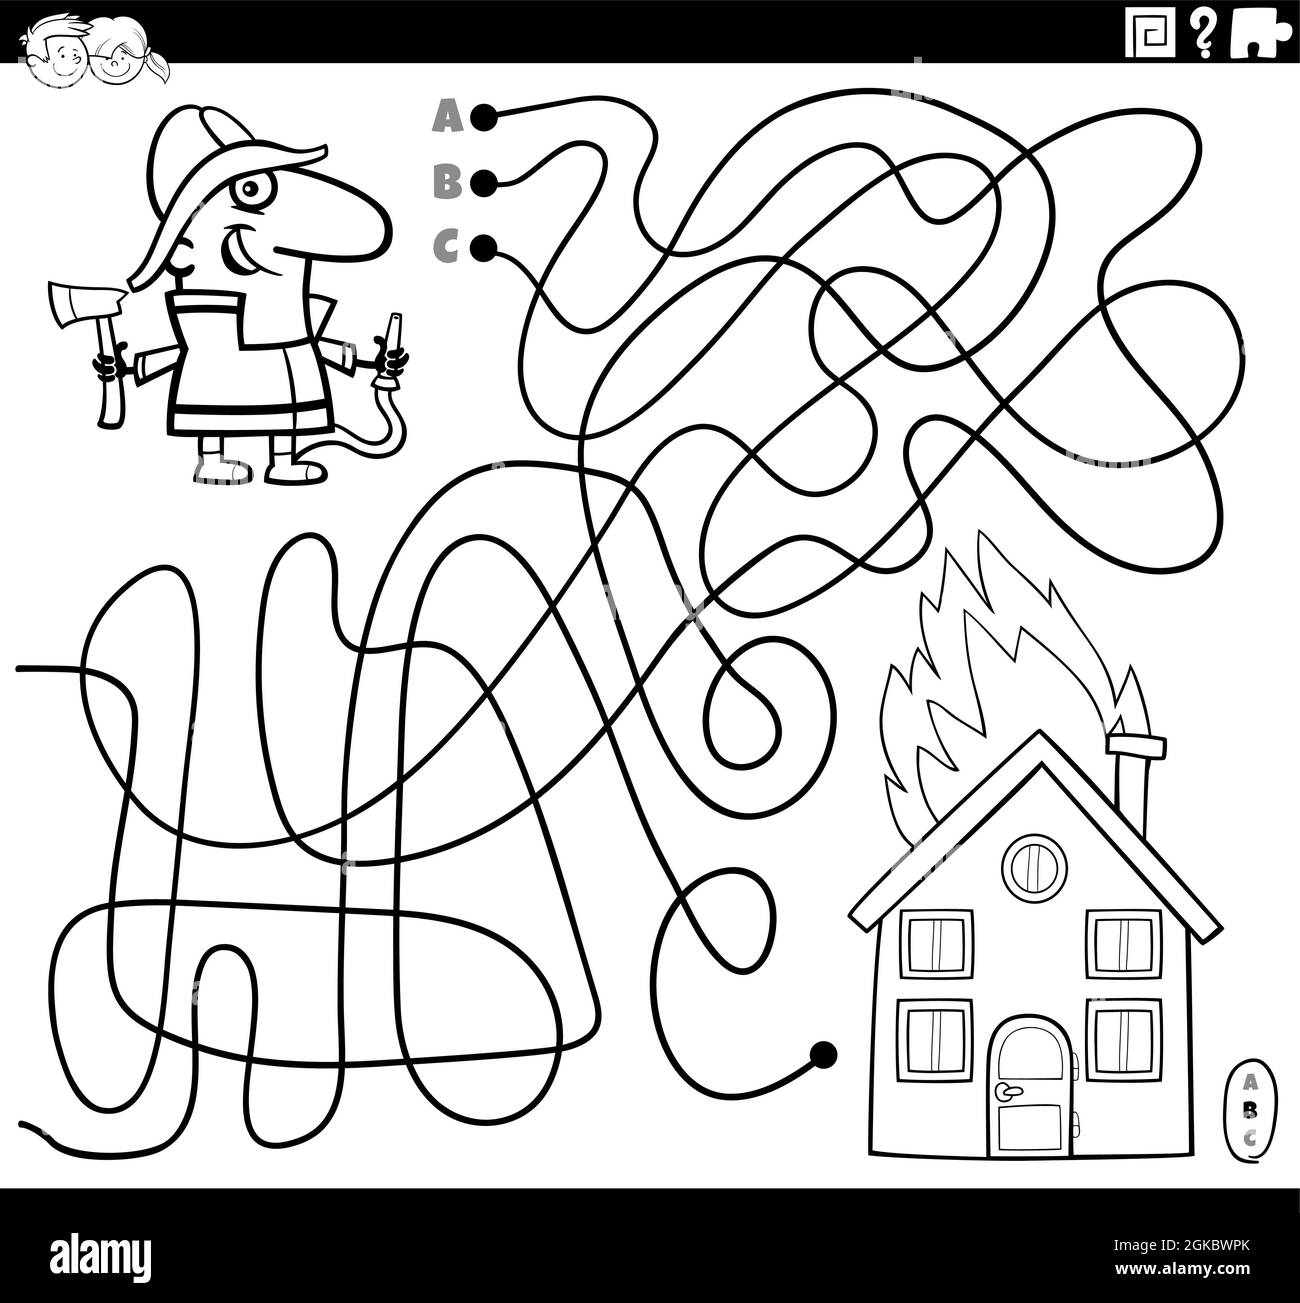 Dessin animé noir et blanc illustration de lignes labyrinthe jeu de puzzle avec le personnage de pompier et la maison de combustion coloriage de la page de livre Illustration de Vecteur